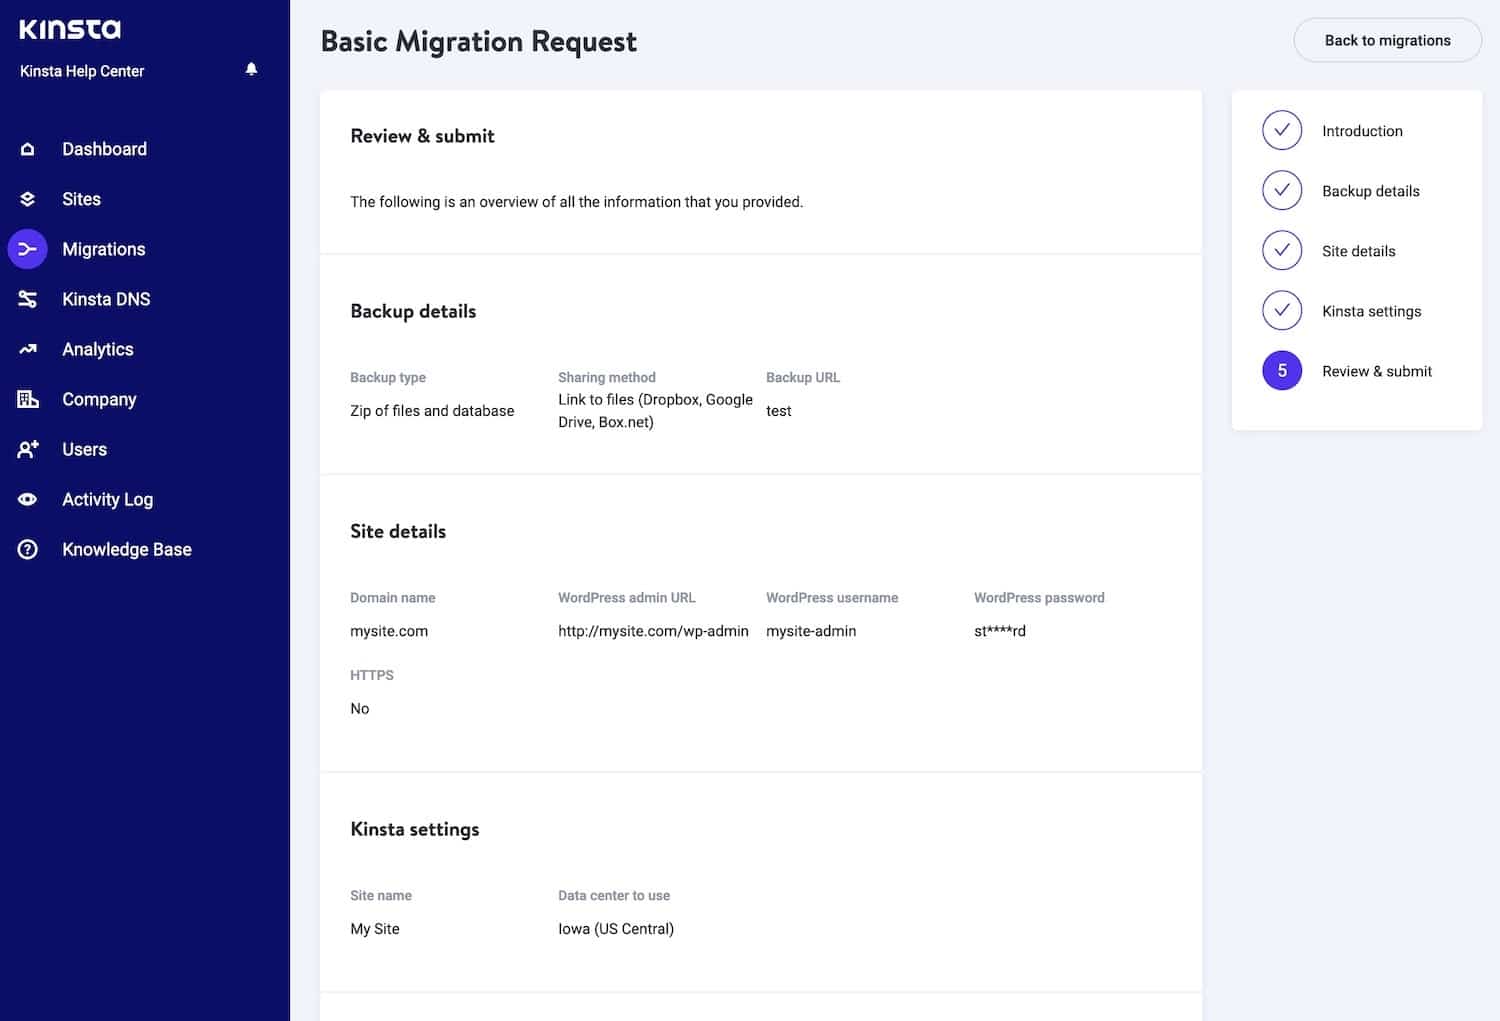 Resumen de los detalles de la solicitud de migración